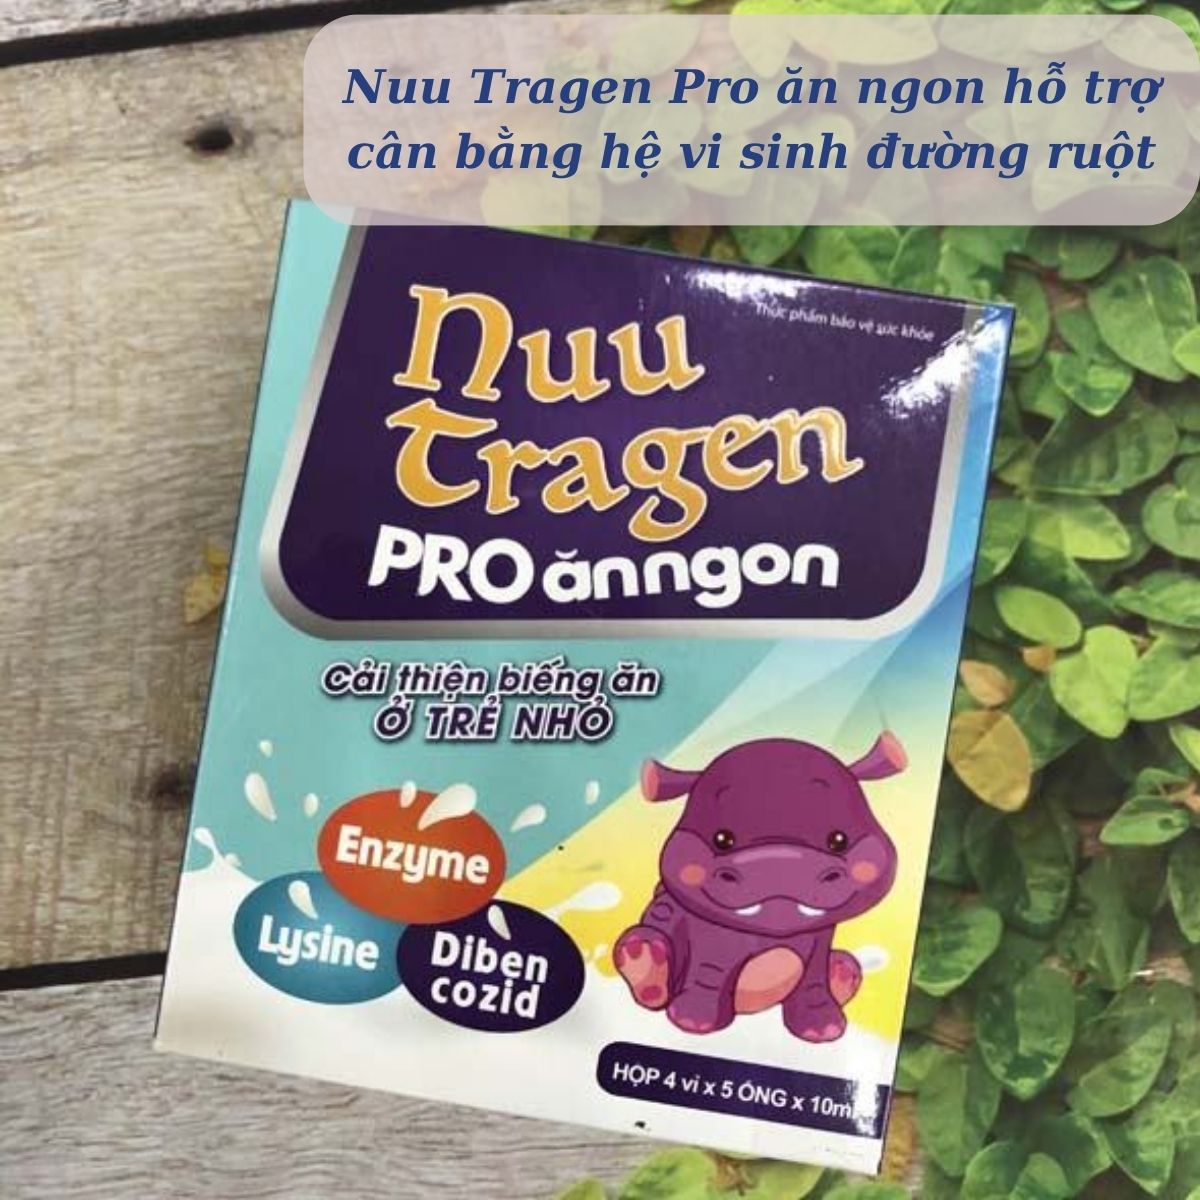 Nuu Tragen Pro ăn ngon